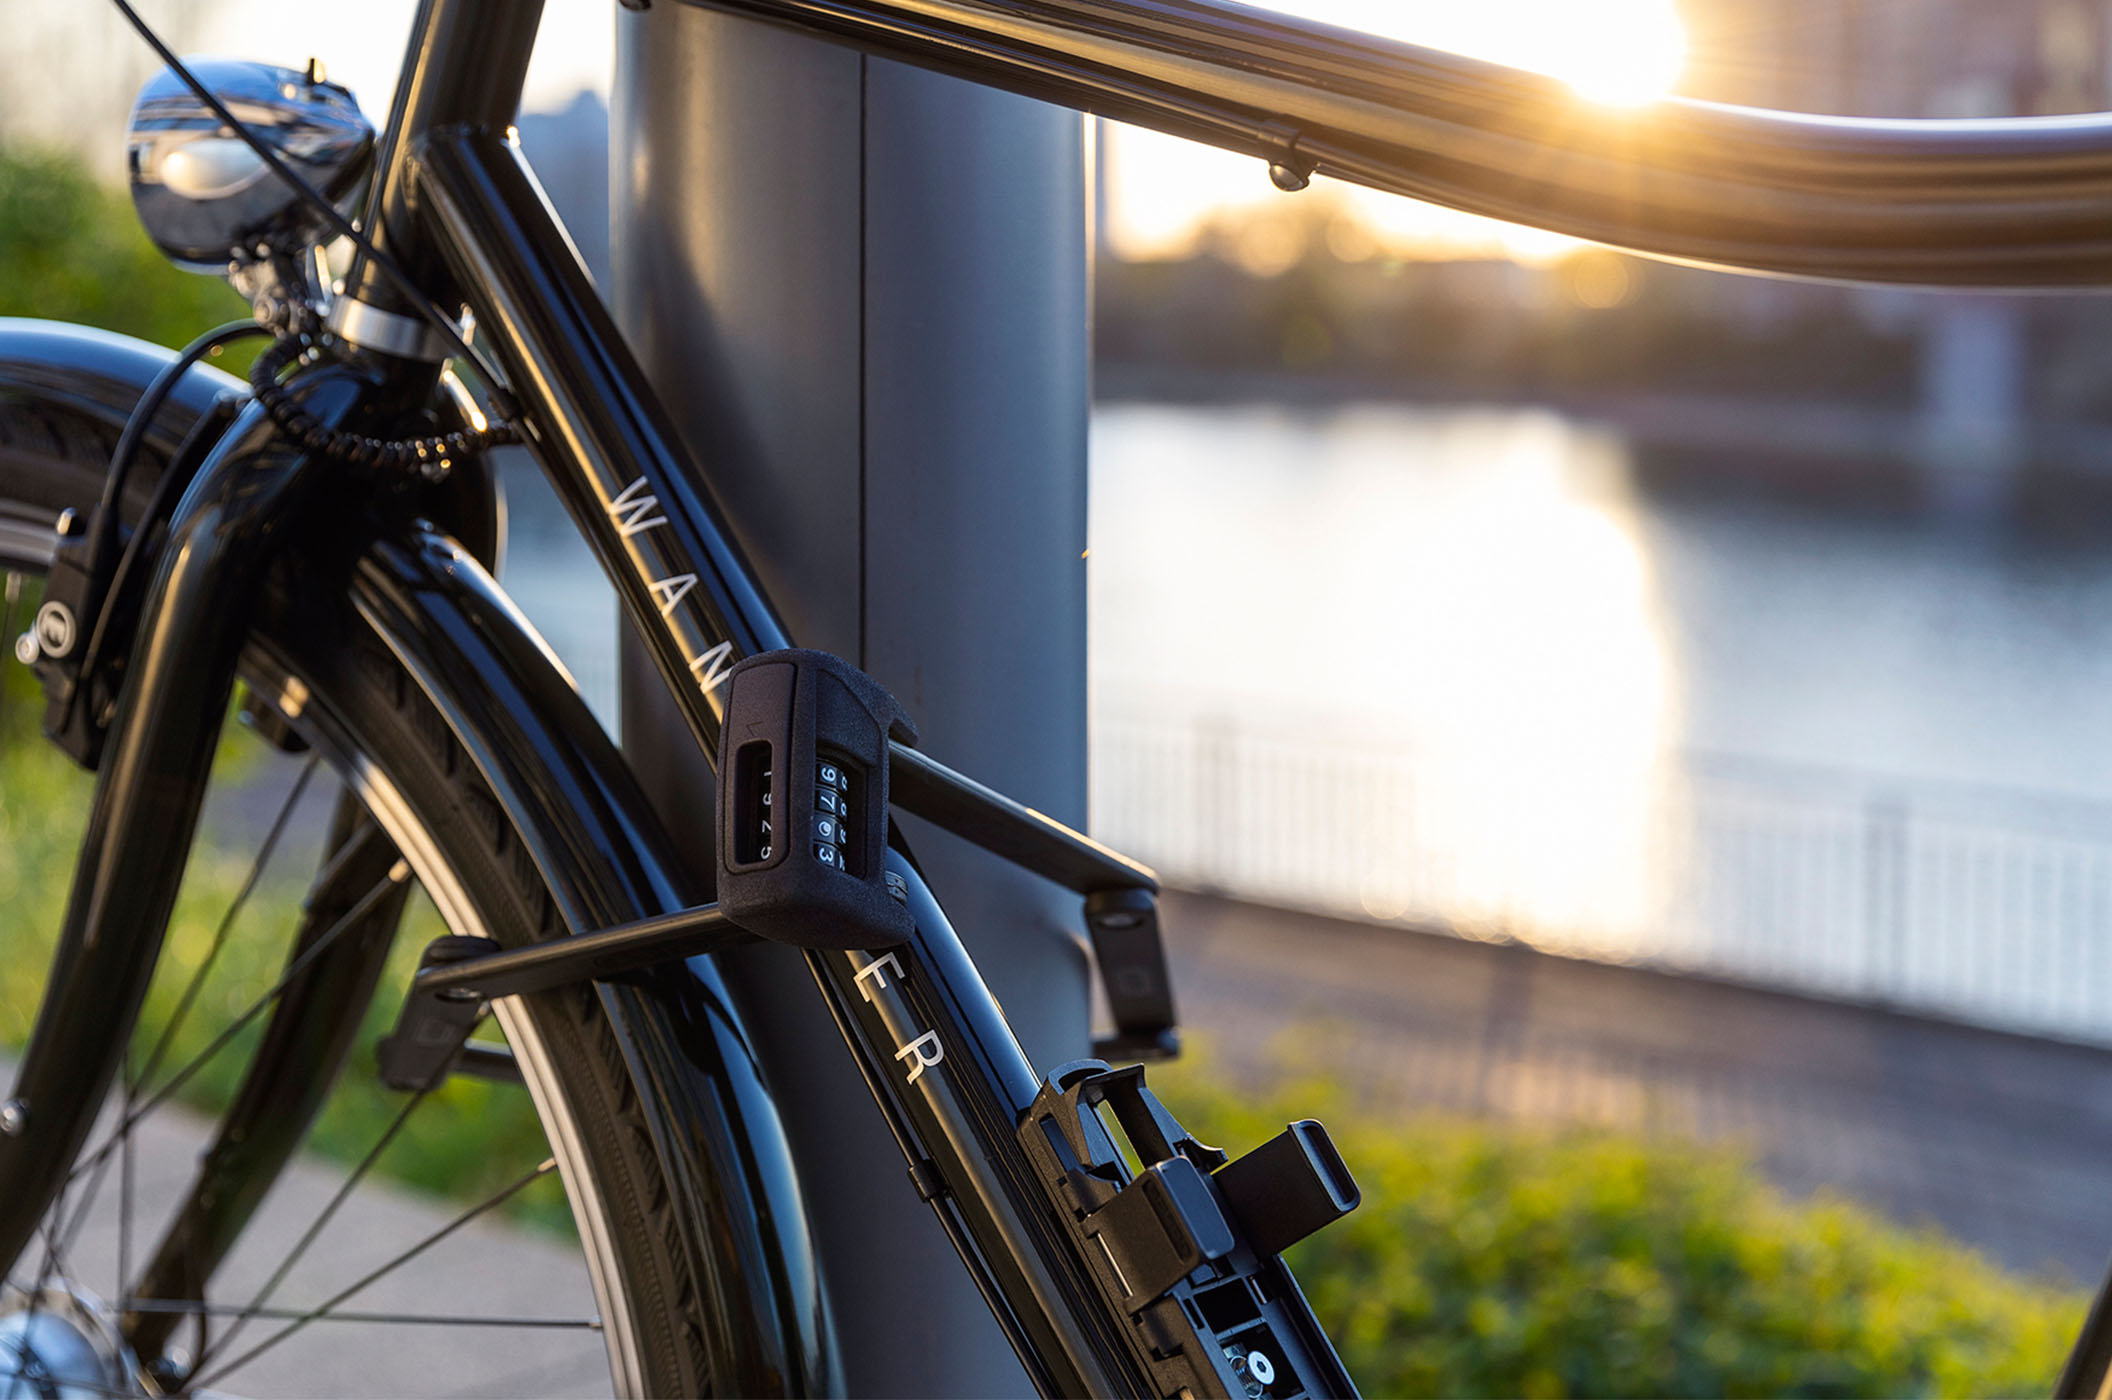 El diseño de la cerradura en U se une a la tecnología digital, dando como resultado un candado de bicicleta con control desde tu smartphone